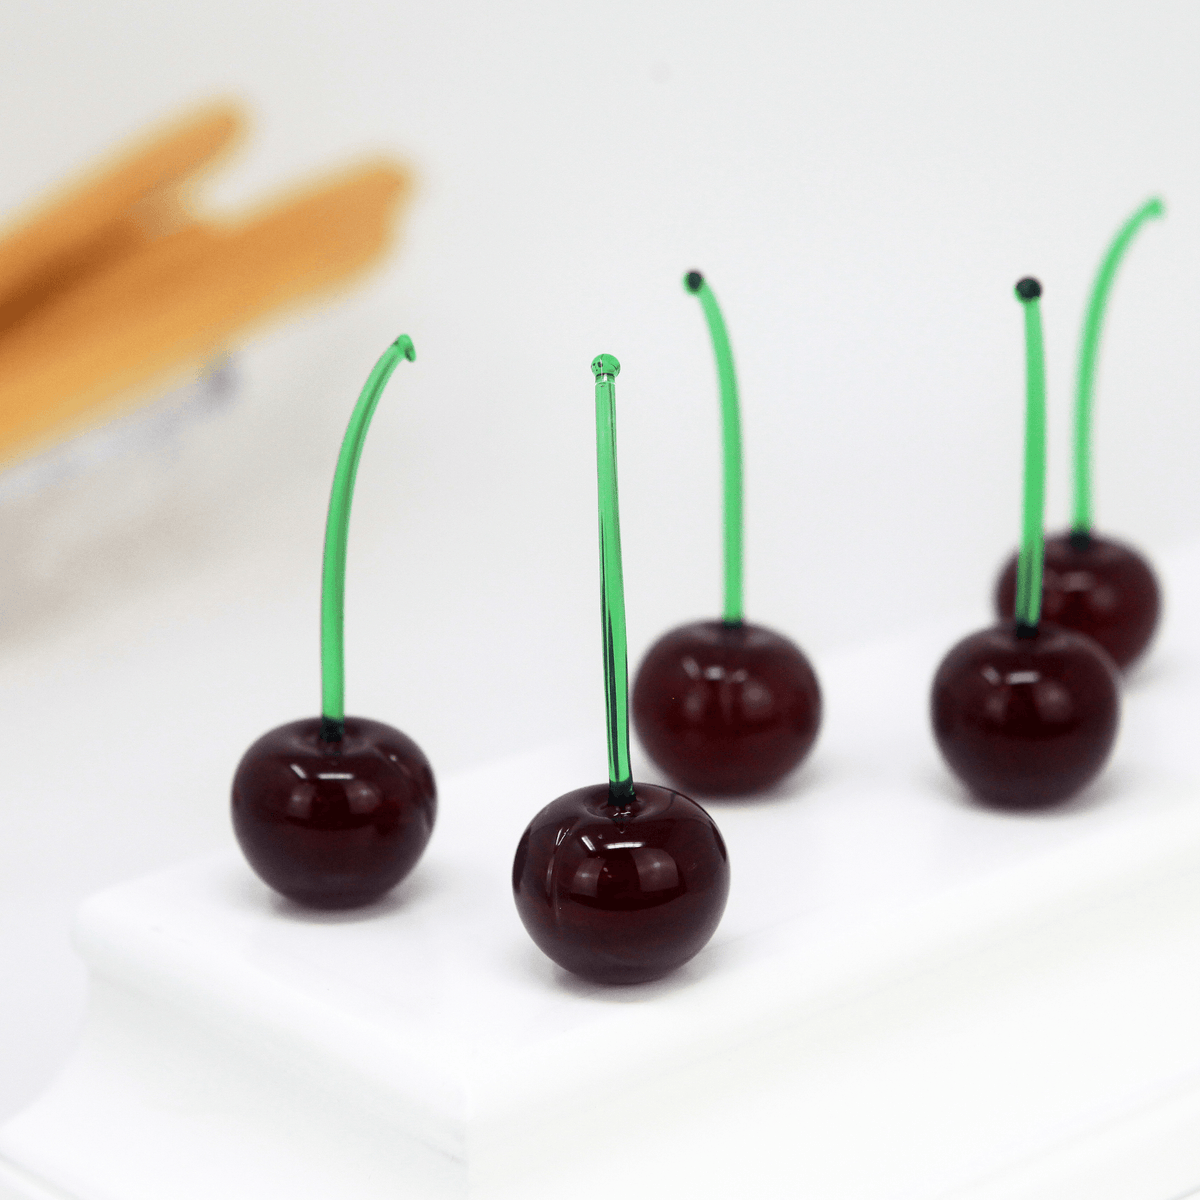 Murano Glass Cherries, Green Stem, Sets of 3 or 5, Handmade in Murano, Italy at MyItalianDecor